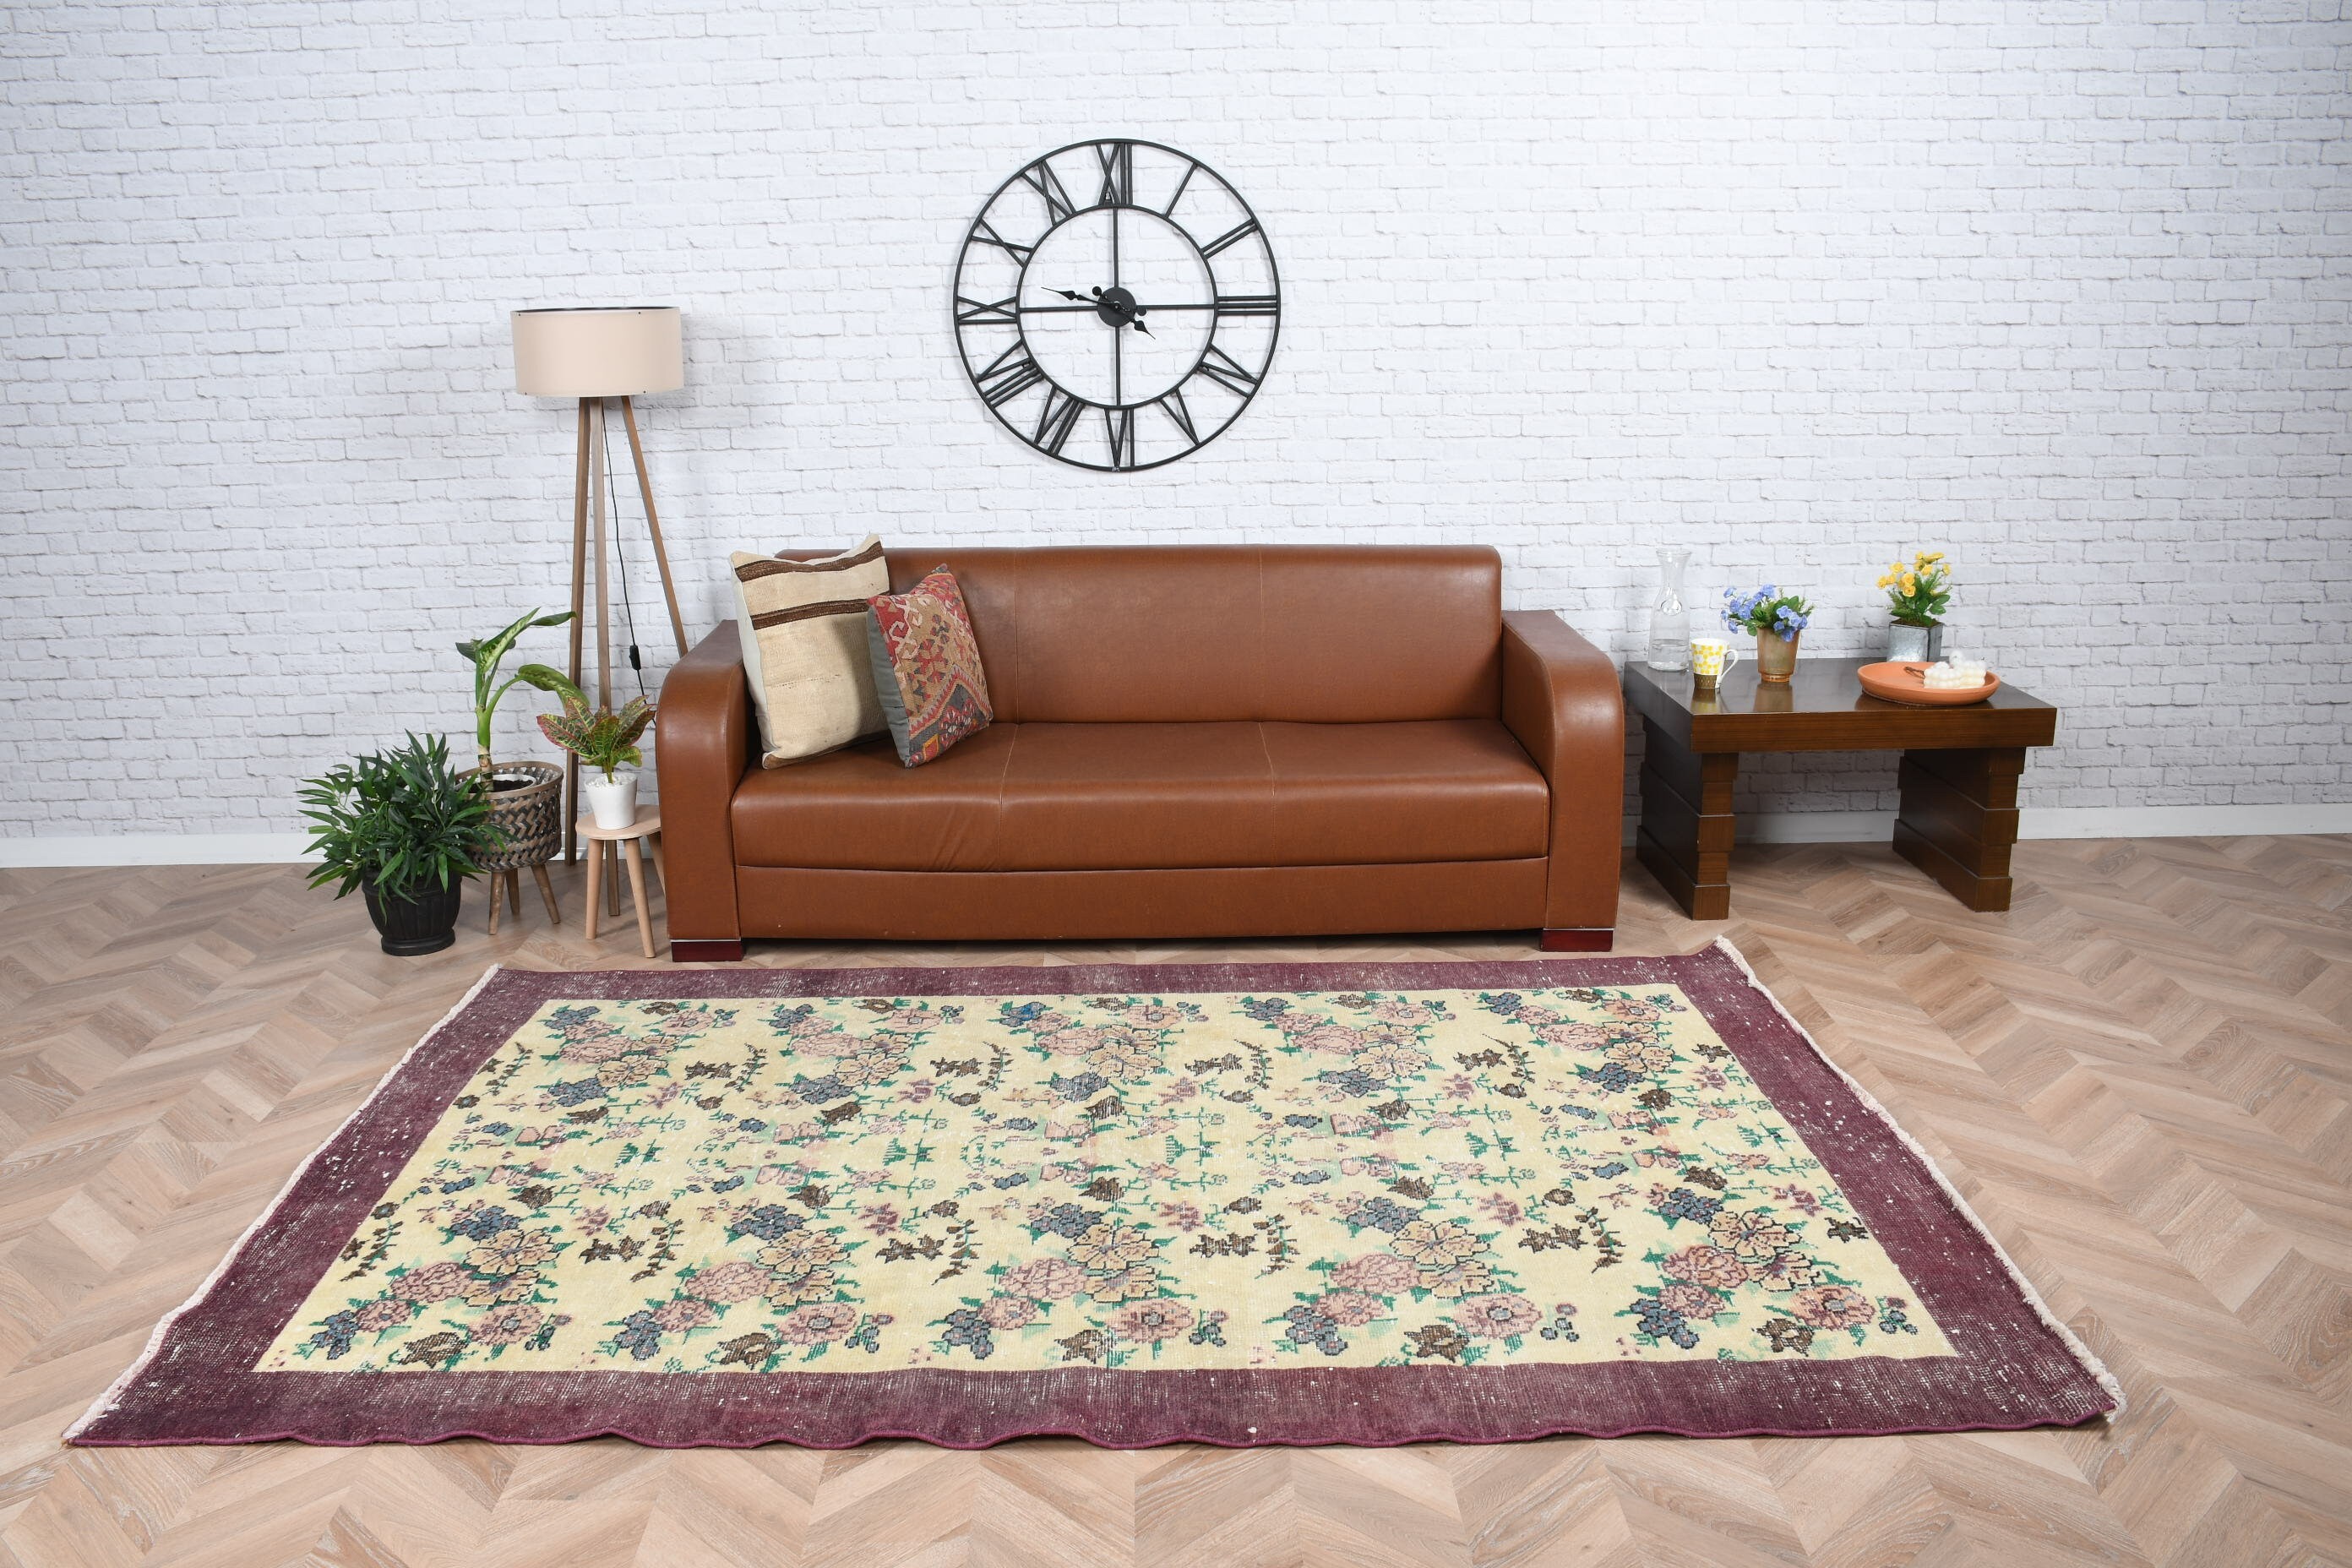 Living Room Rug, Turkish Rugs, Vintage Rug, Bedroom Rugs, Oriental Rug, Green  5.5x8.6 ft Large Rug, Rugs for Living Room